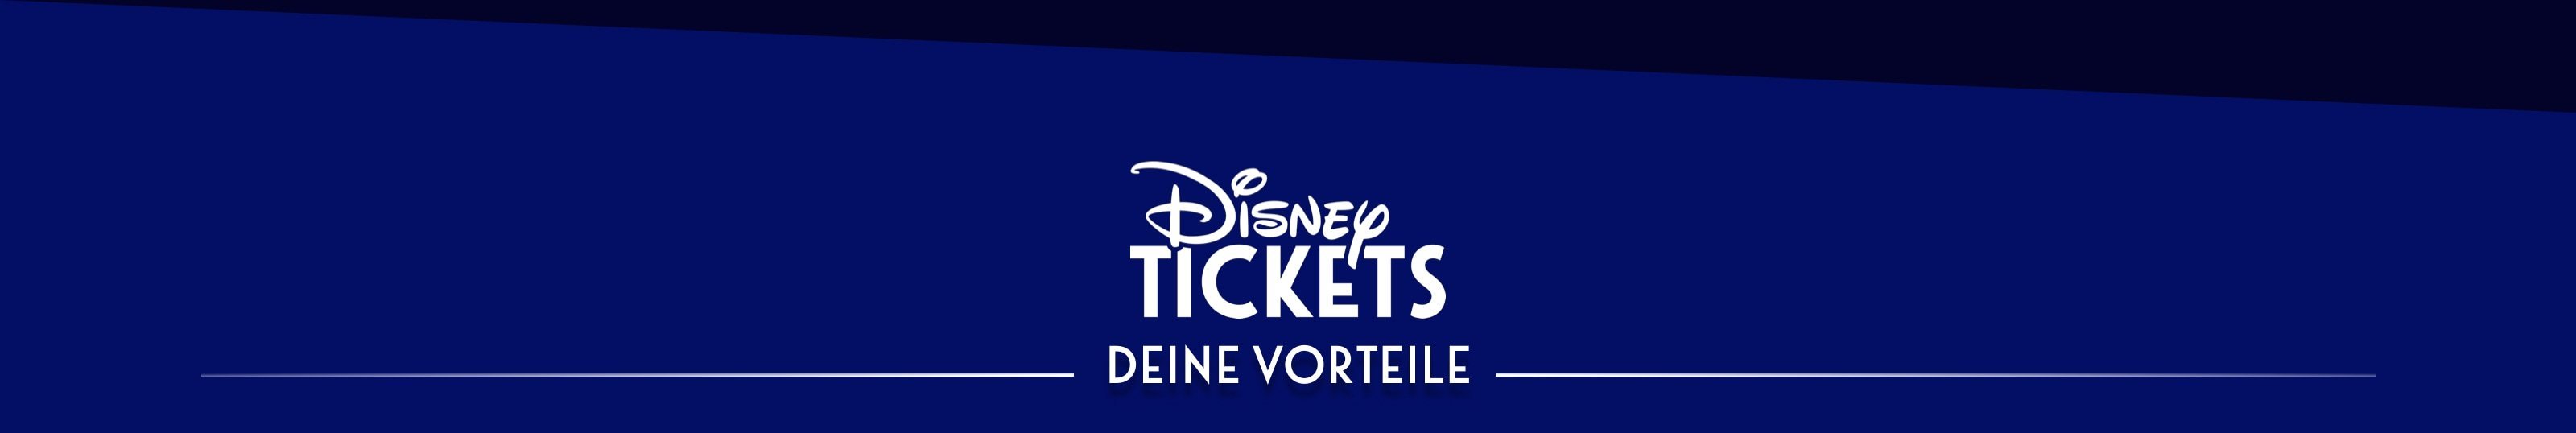 Disney Tickets - Deine Vorteile